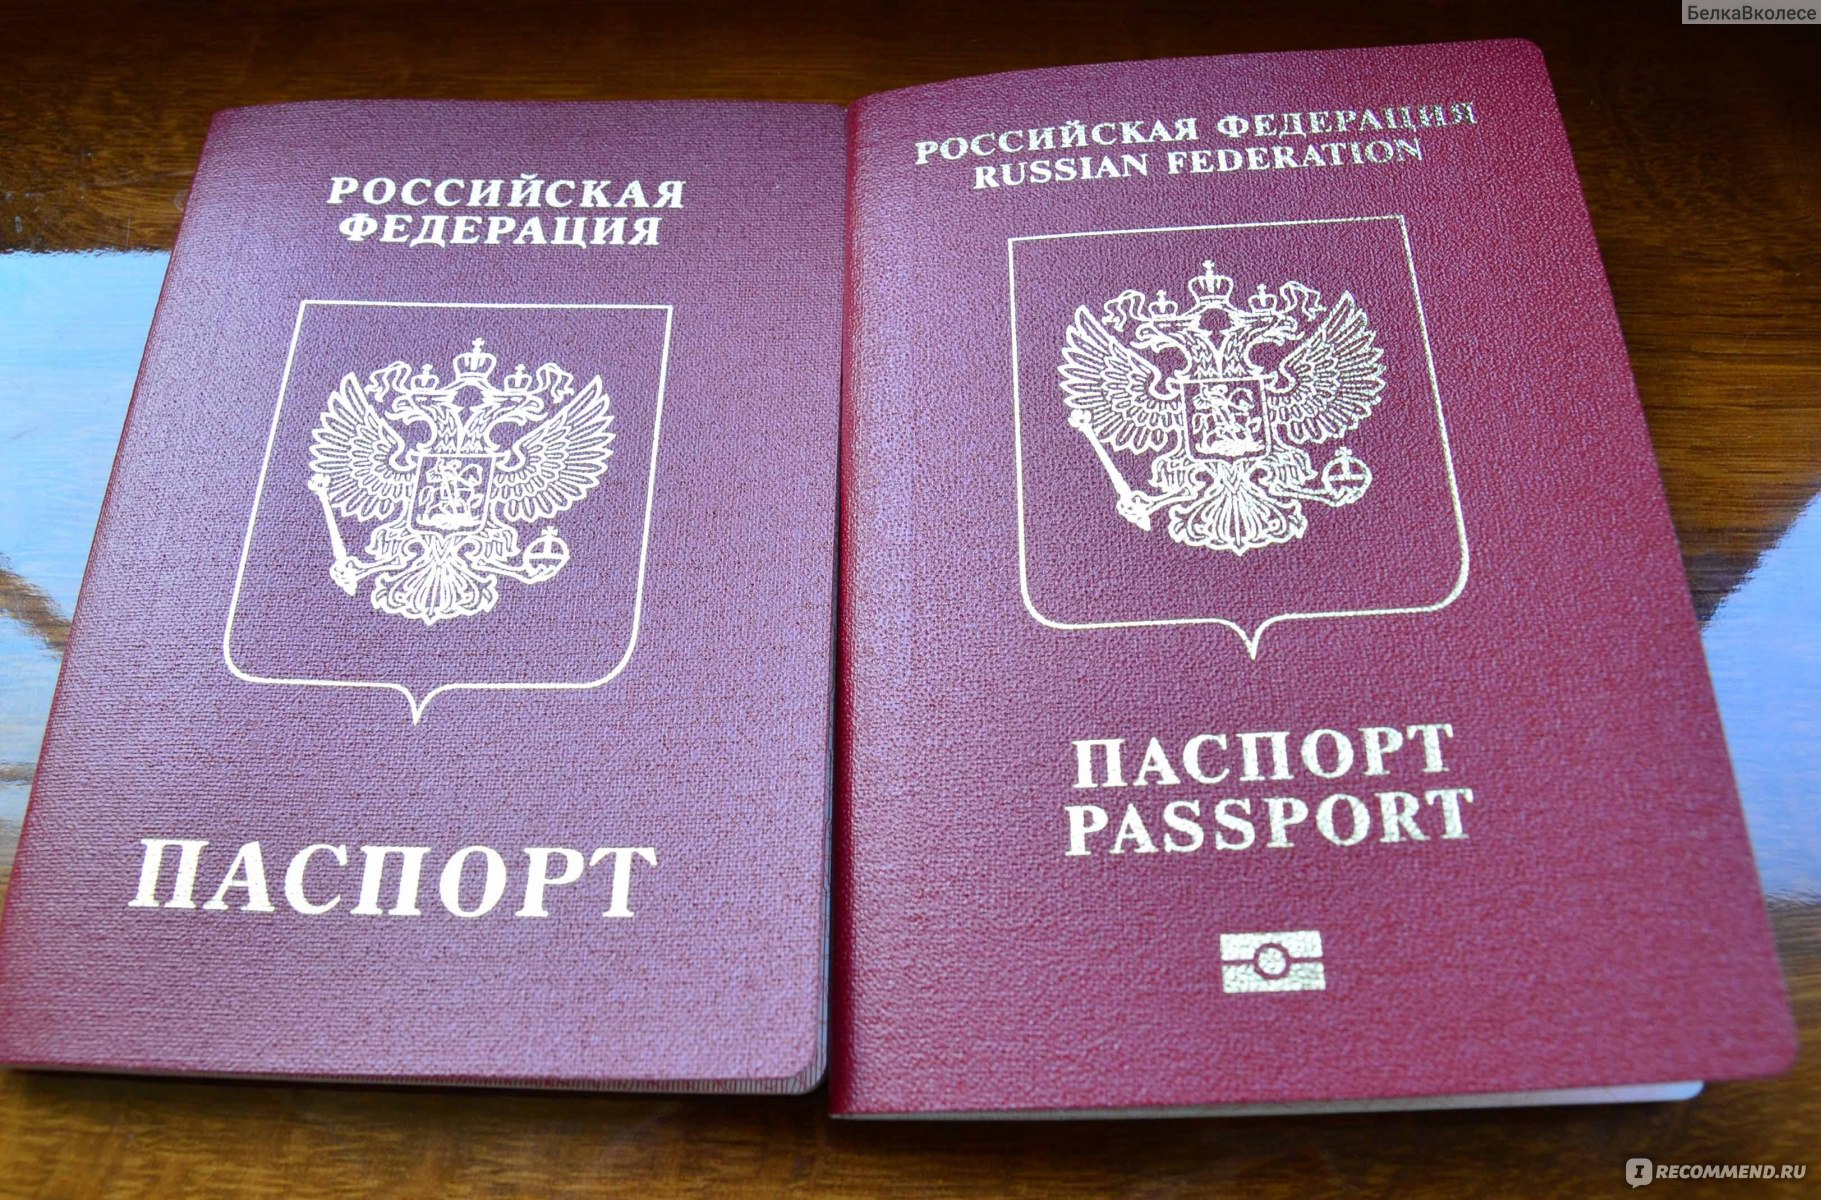 Какой заграничный паспорт лучше делать нового или старого образца